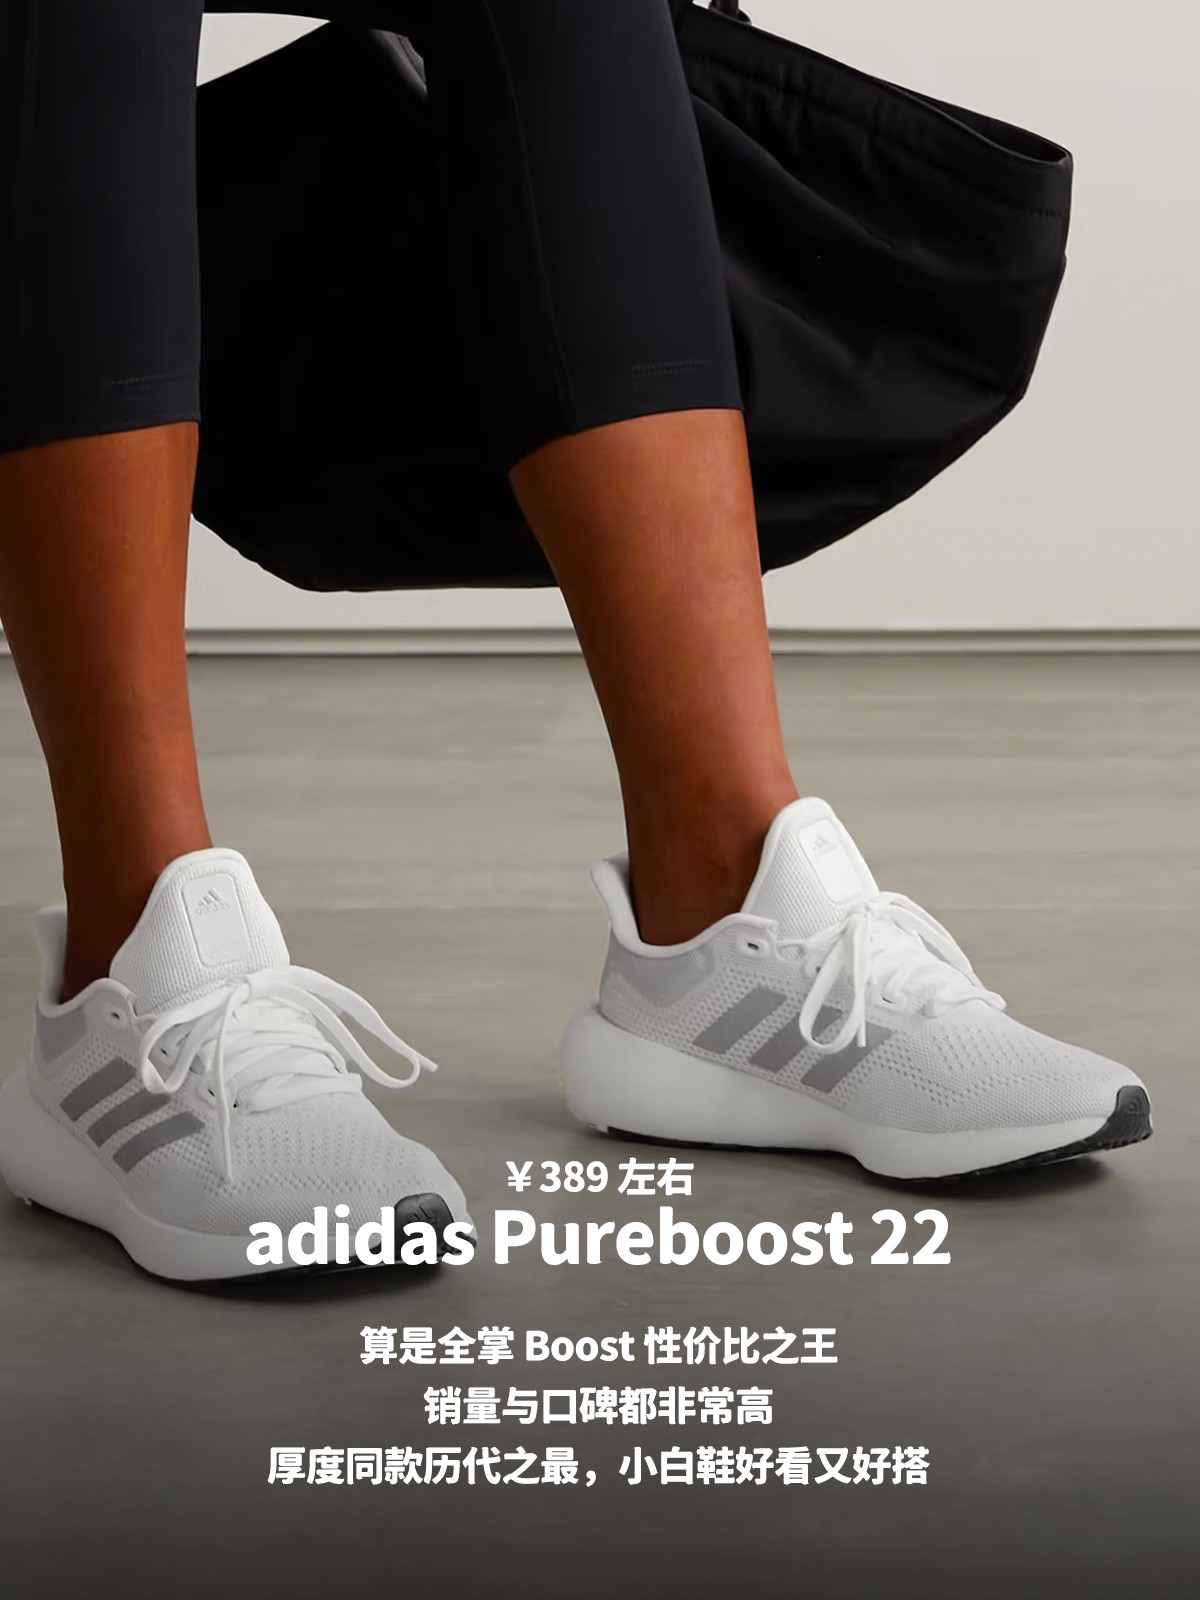 Nike,adidas,ANTA,李宁,NB,Joyride  300 元档，有哪些高性价比「缓震跑鞋」值得关注？